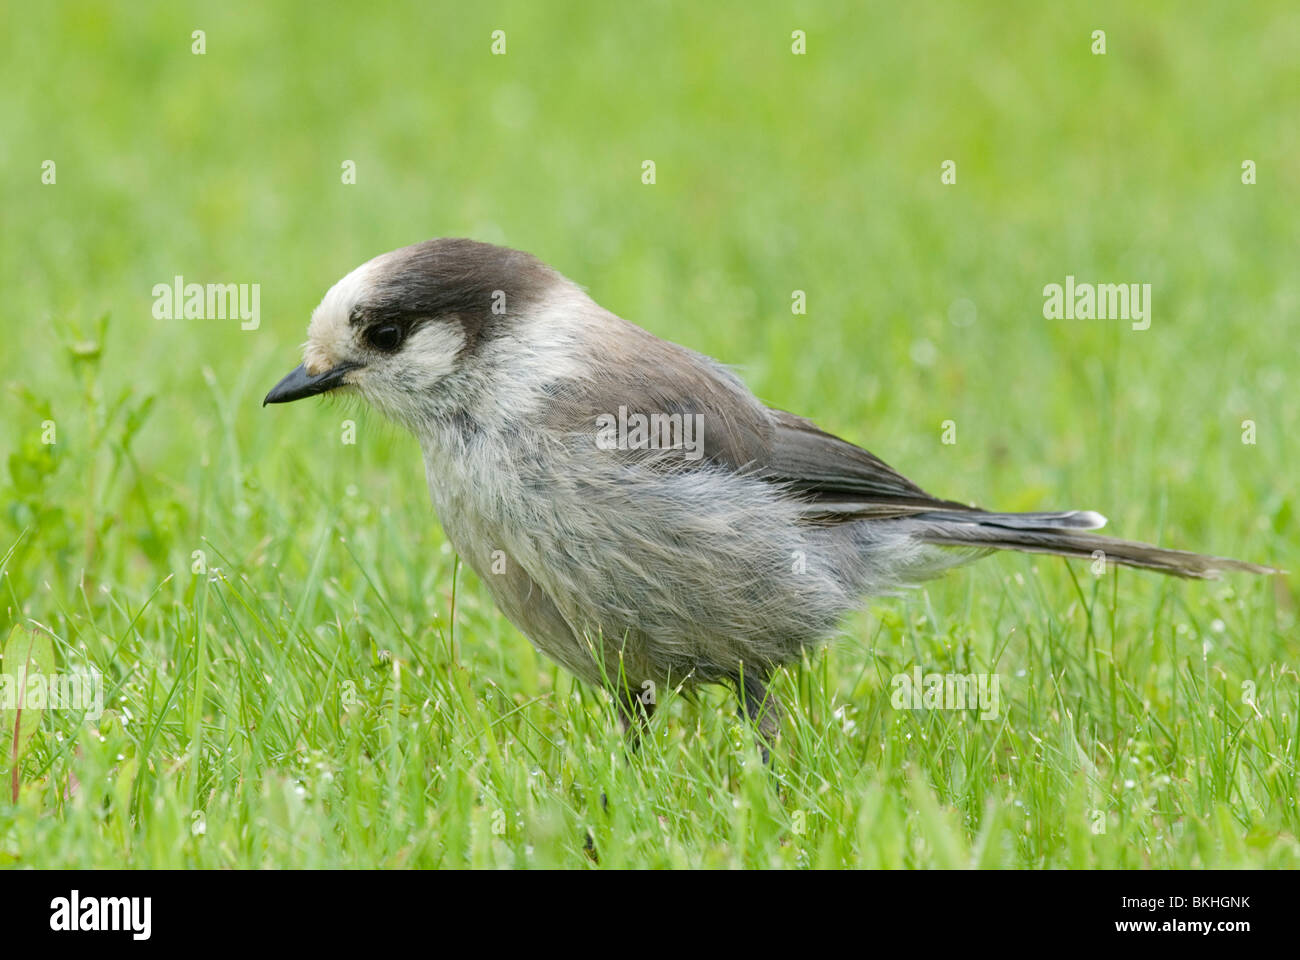 Een Canadese Gaai staat in het gras,A Gray Jay standing in the grass. Stock Photo